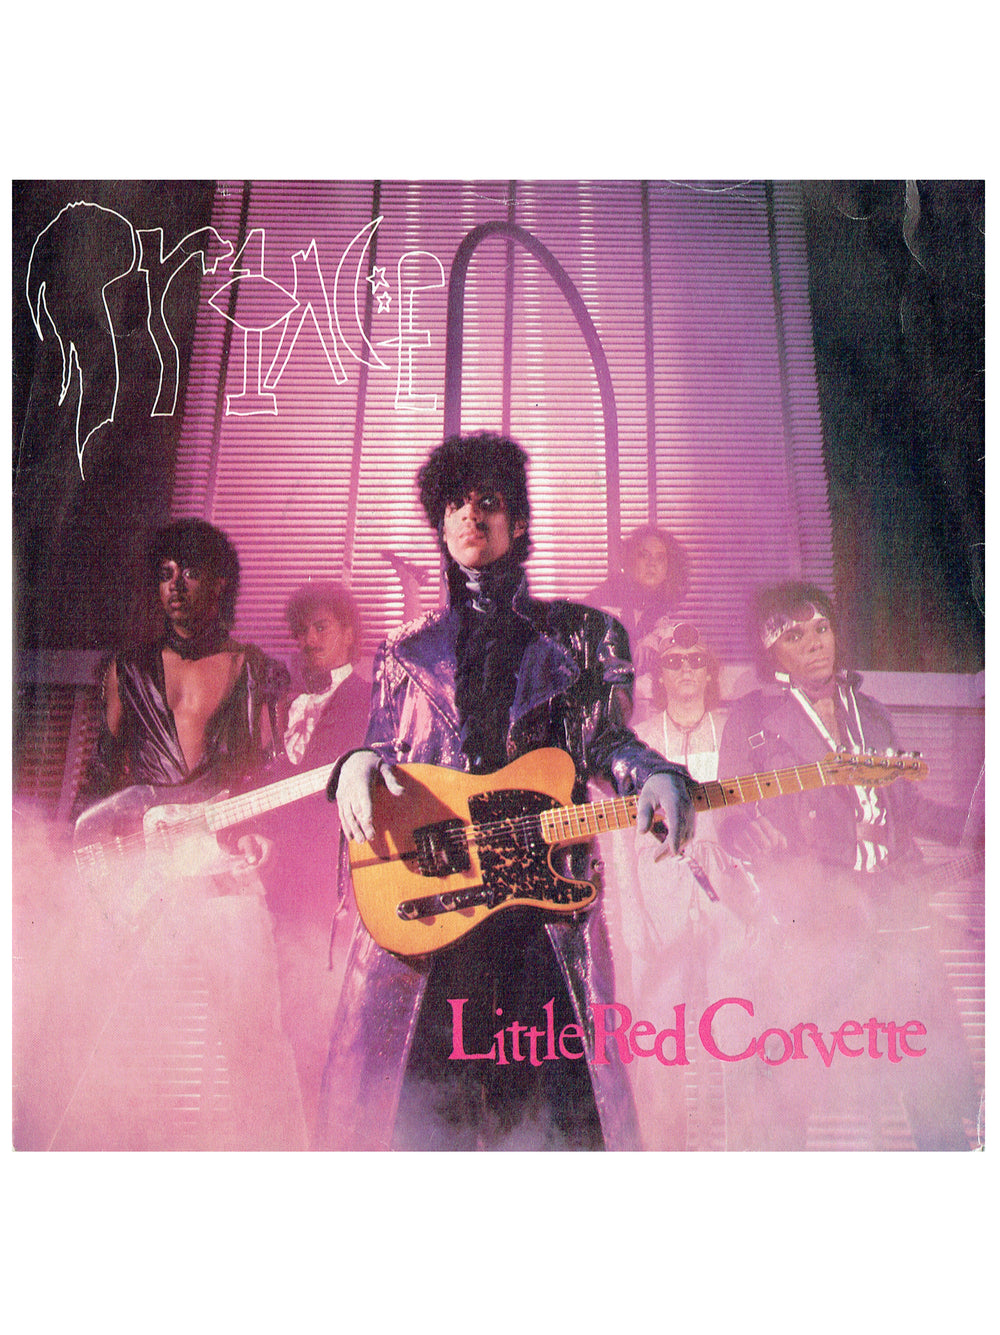 Prince – Little Red Corvette  Vinyl 7" Single UK Preloved: 1983